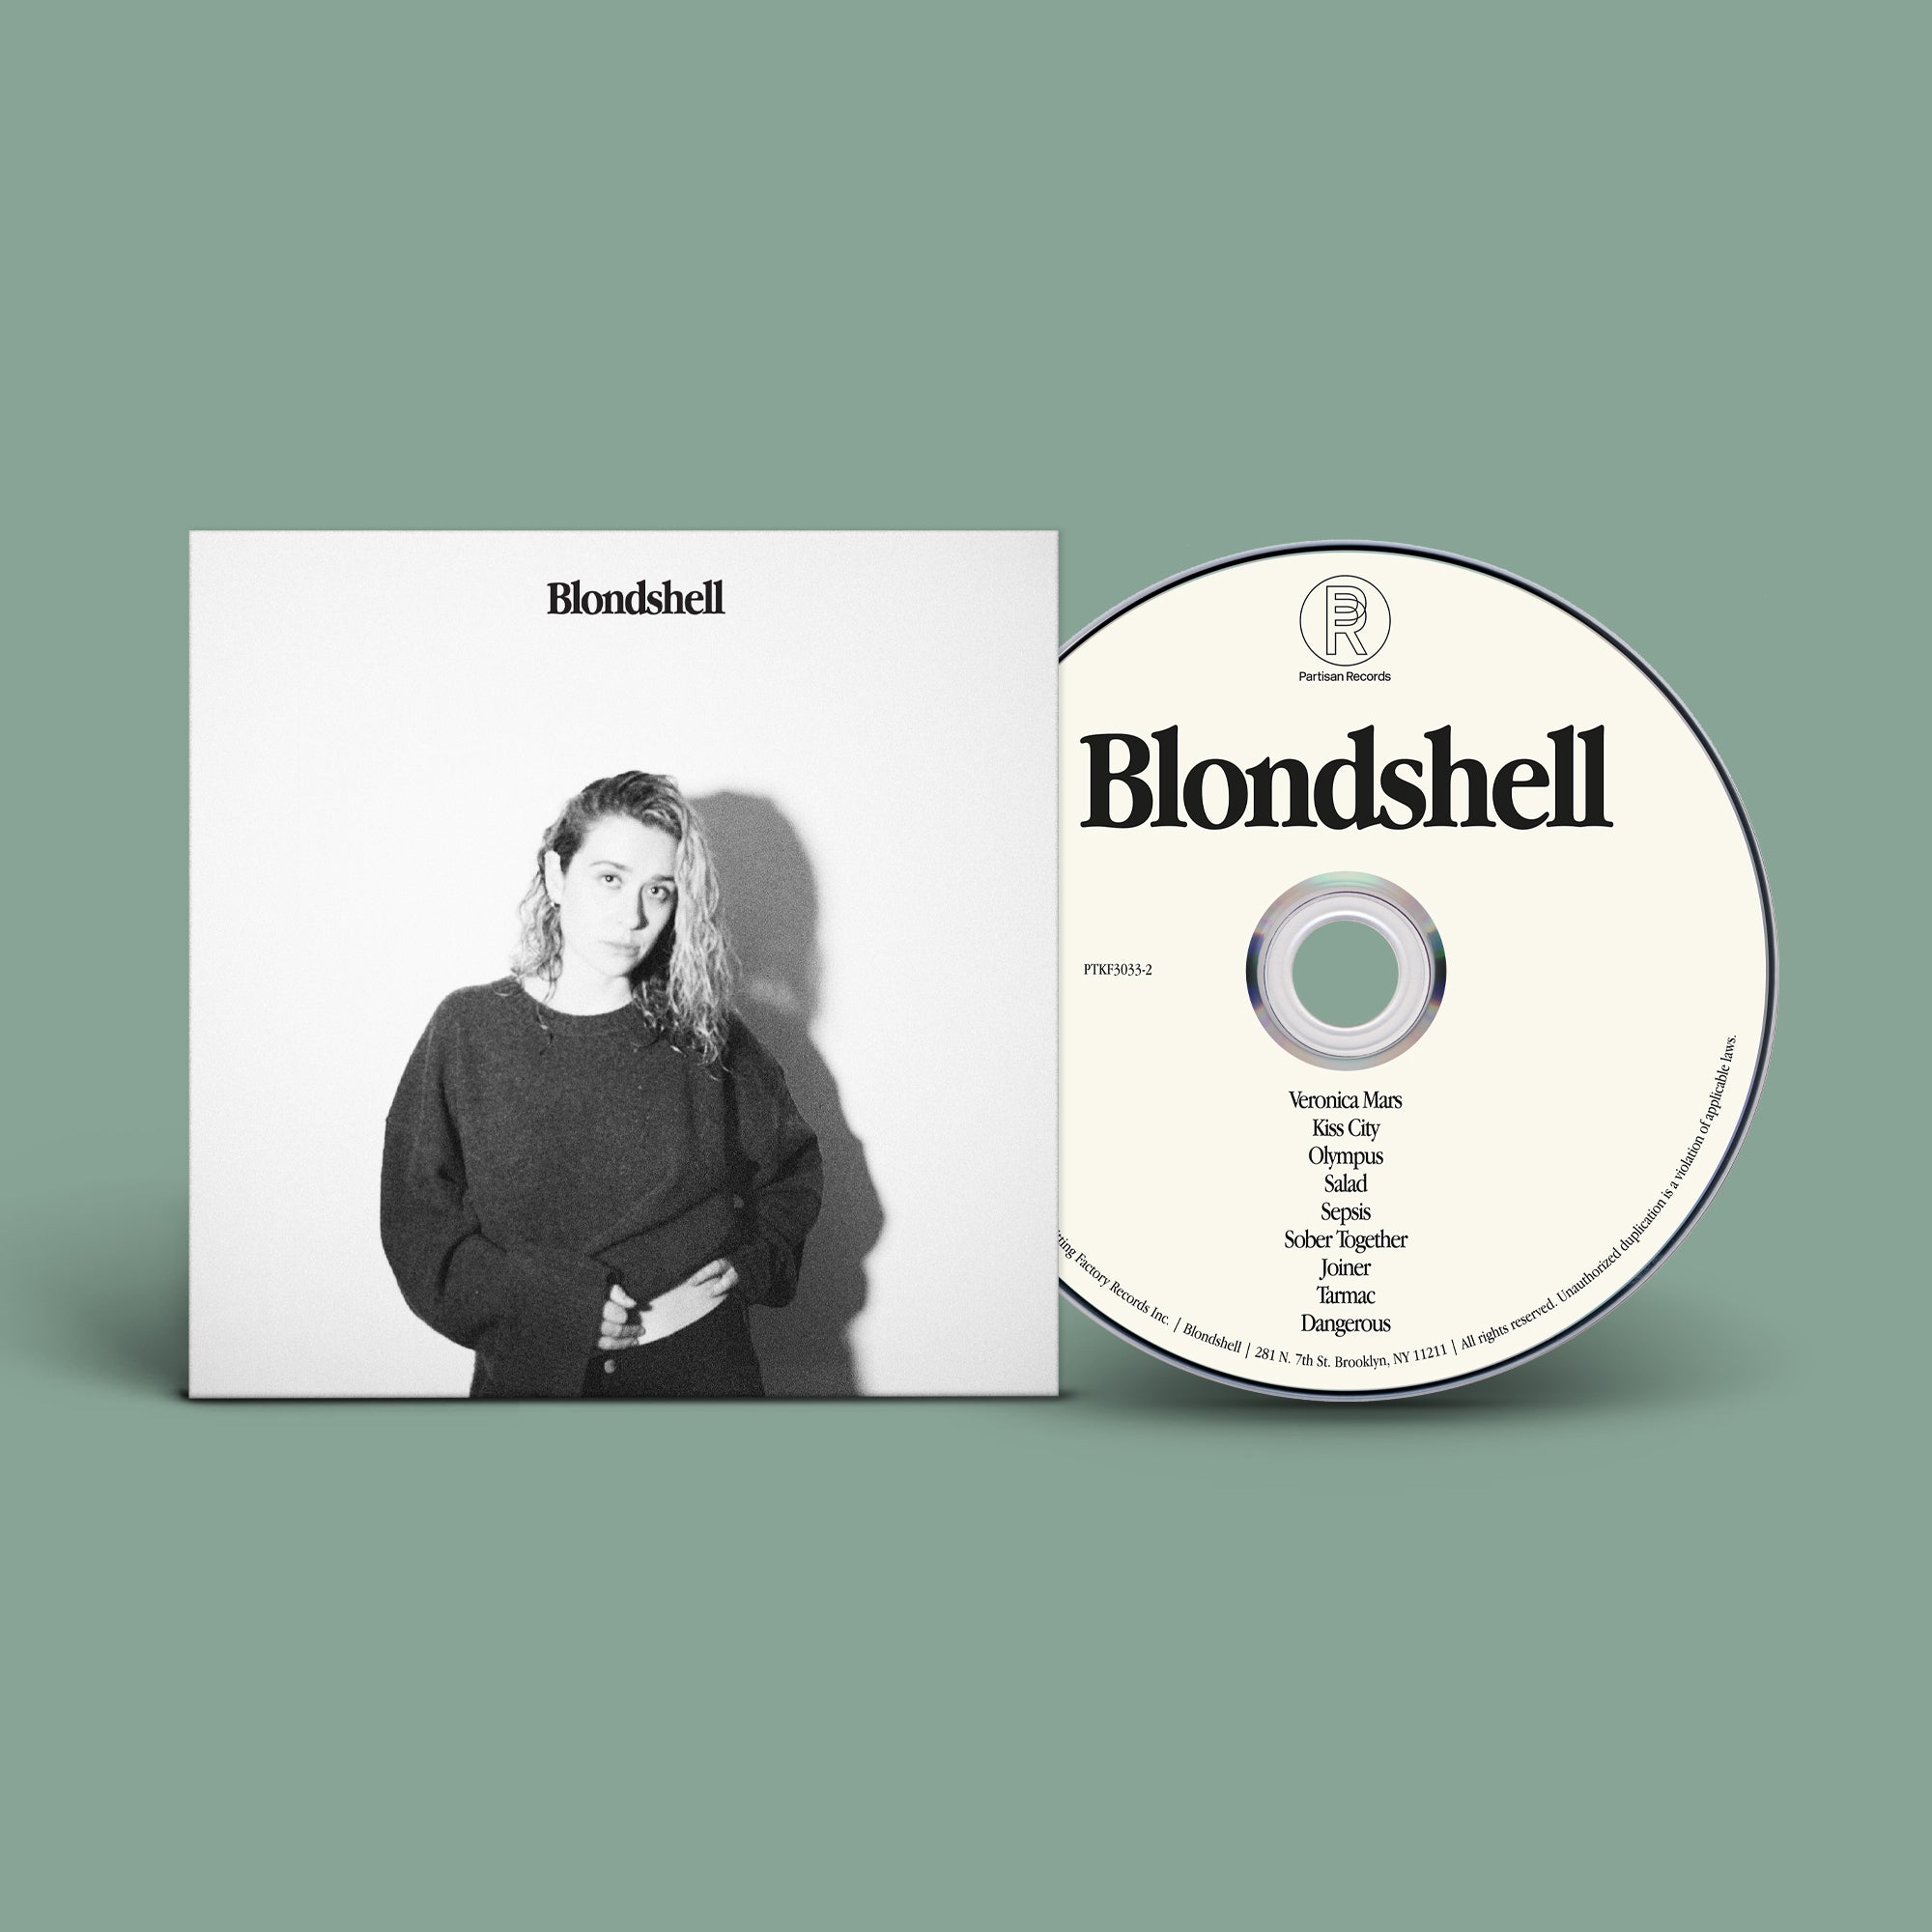 Blondshell - Blondshell: CD